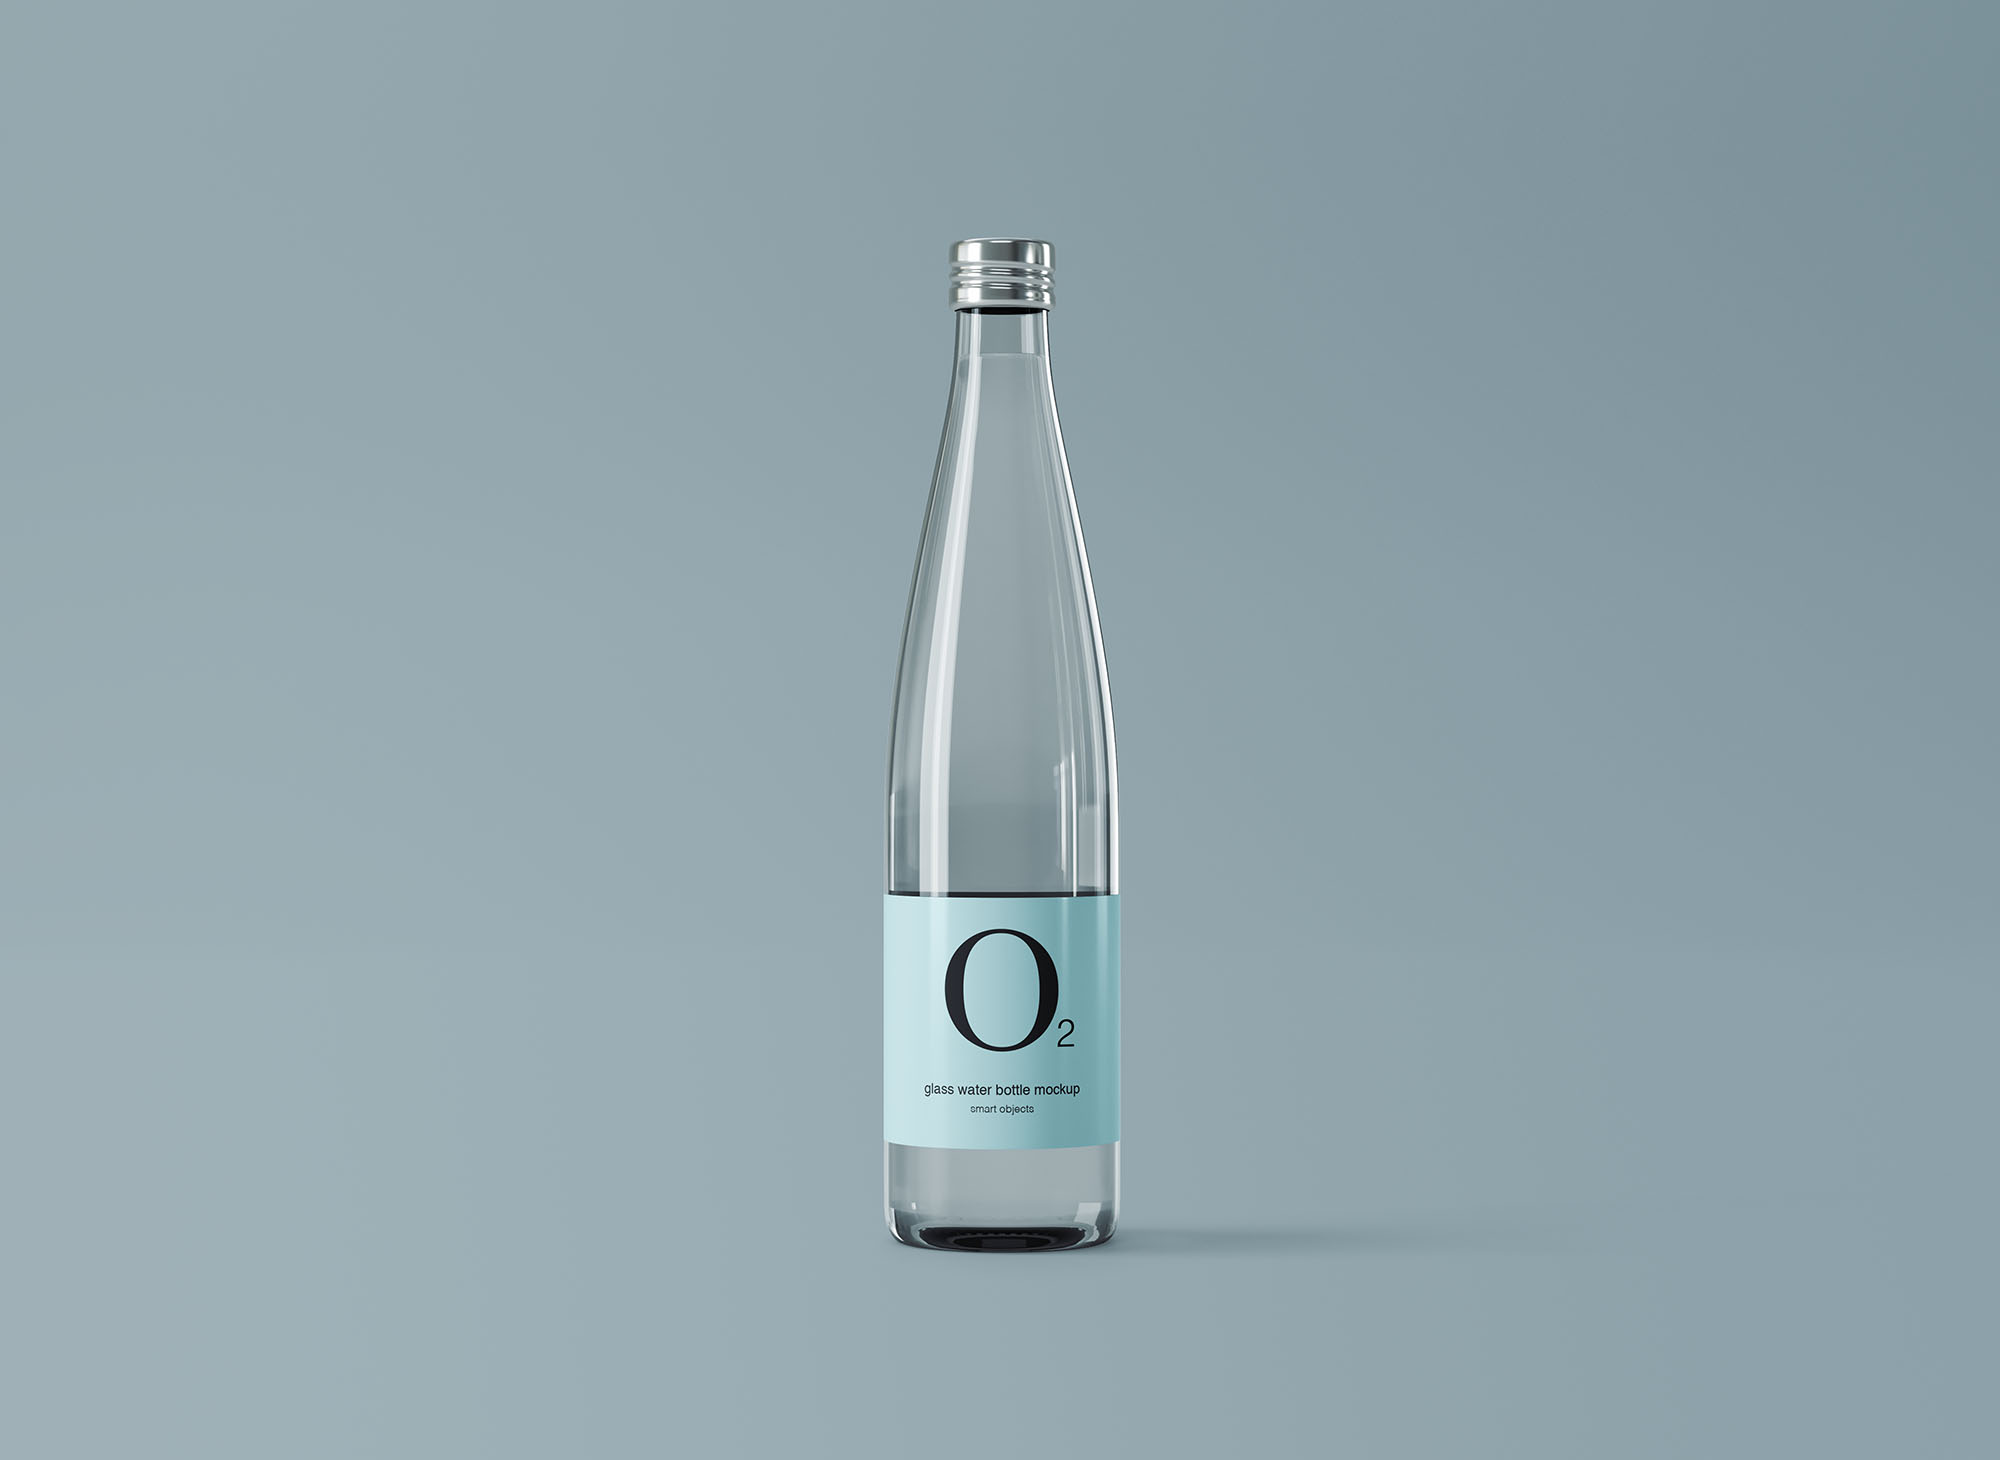 极简设计风格玻璃纯净水矿泉水瓶外观设计图16图库精选 Minimal Glass Water Bottle Mockup插图